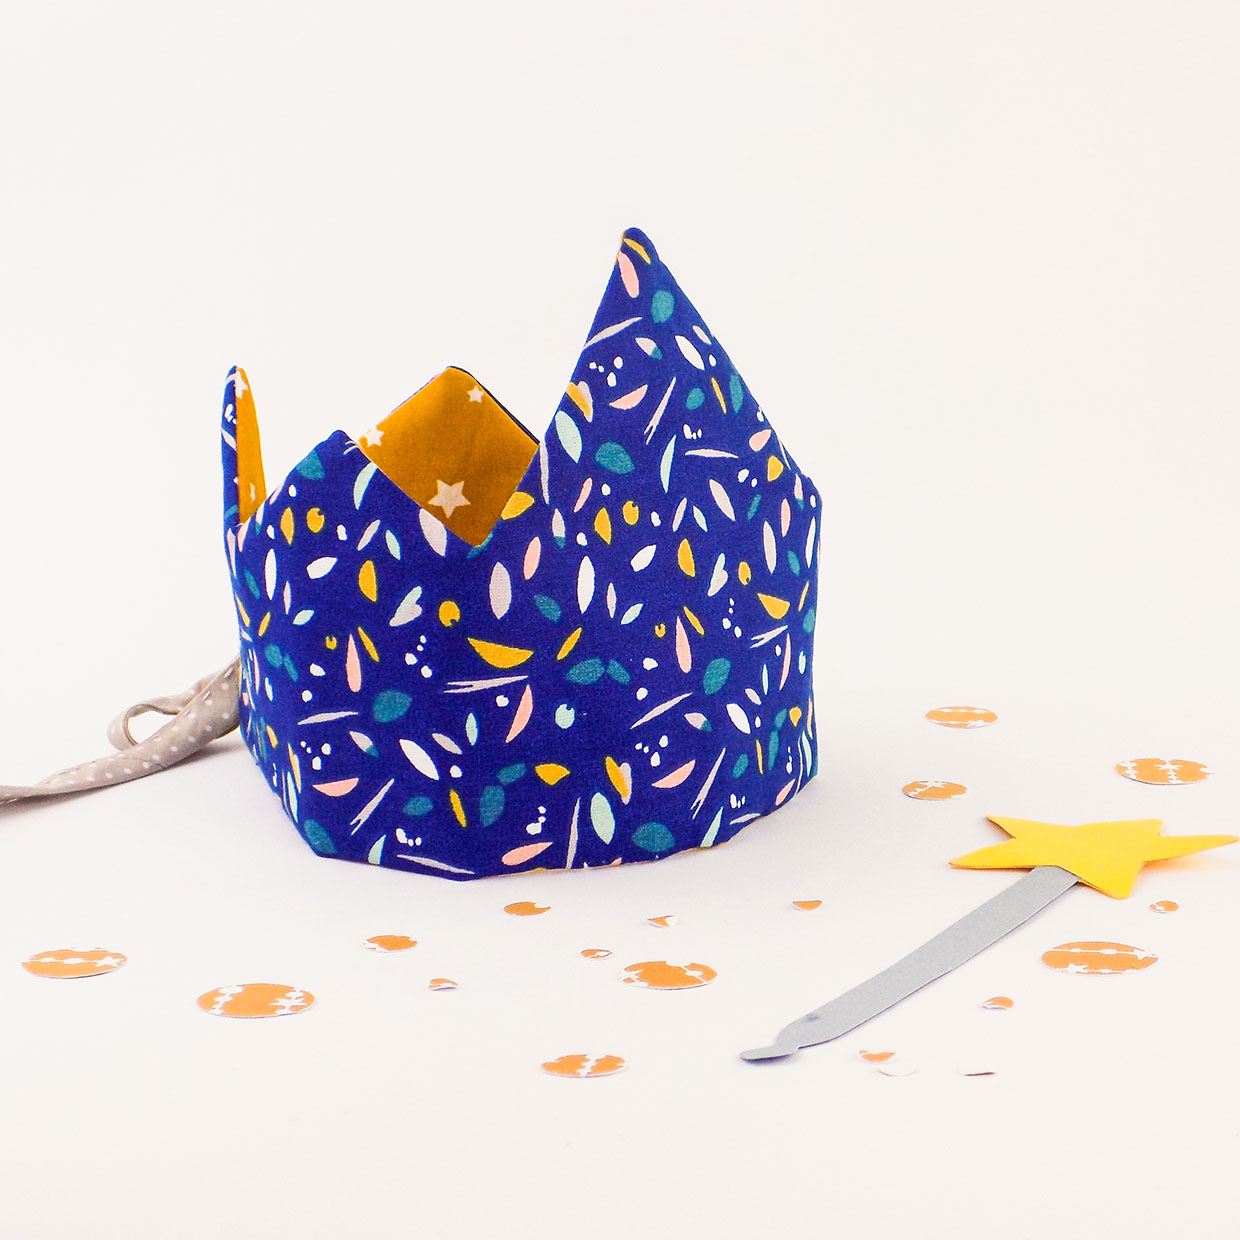 Coroncina corona regina re per compleanno bambina o bambino personalizzata